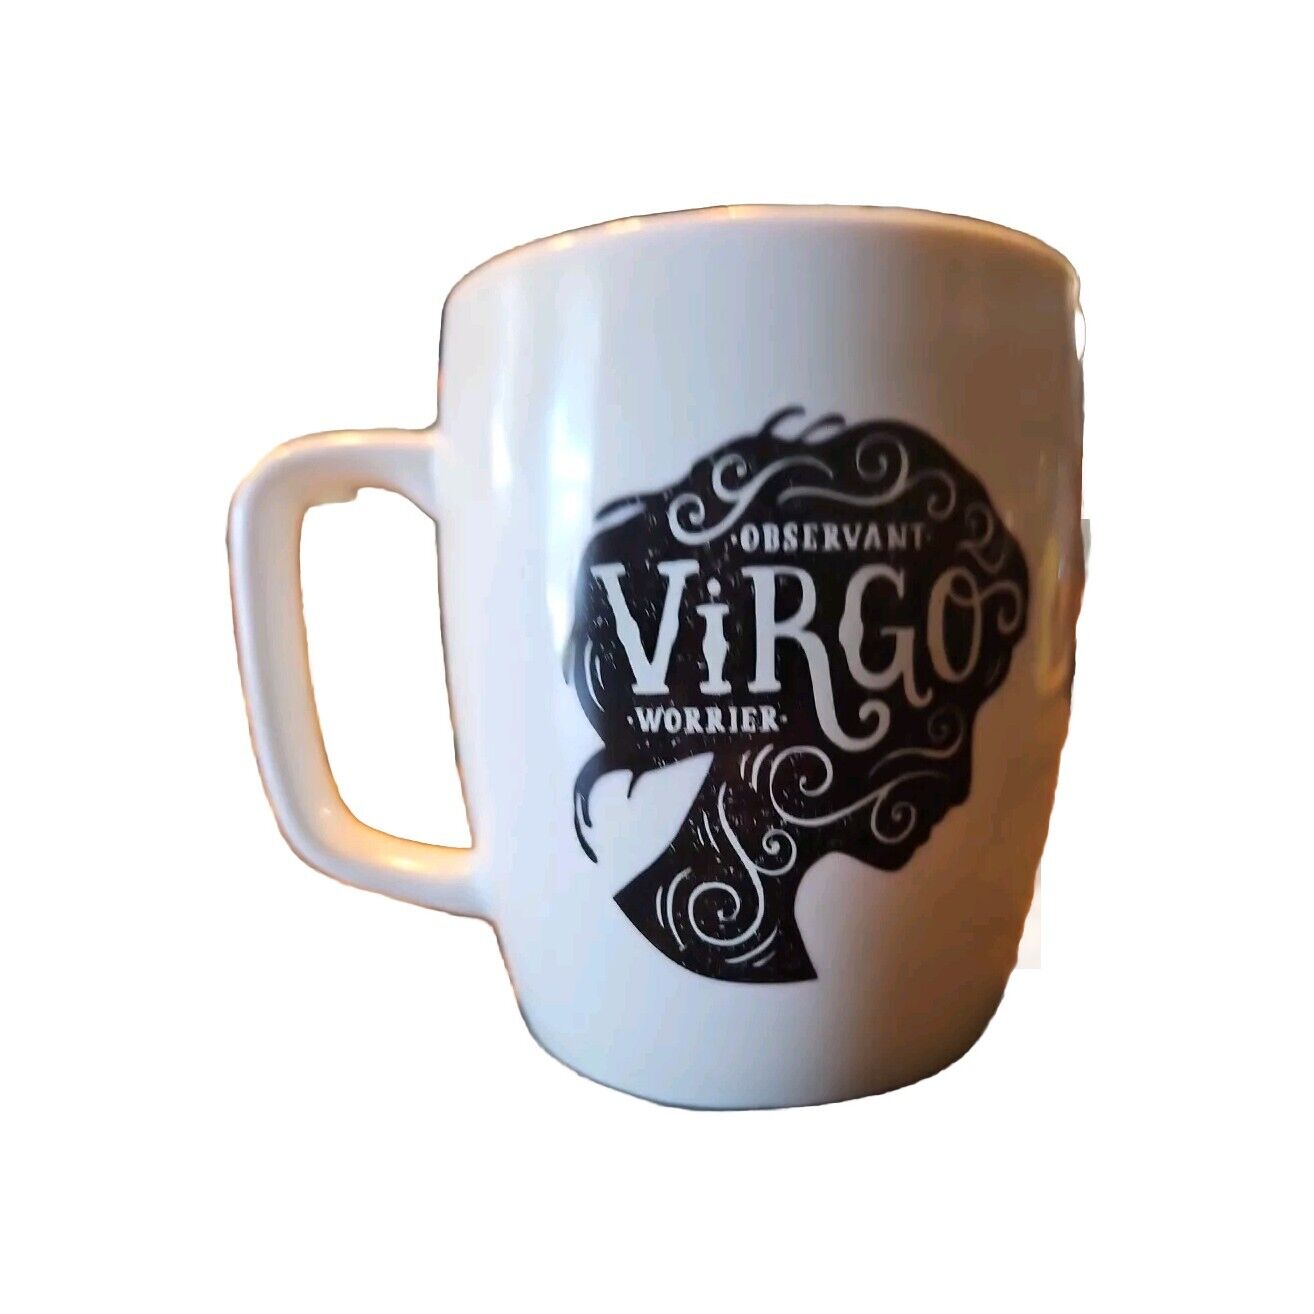 Threshold Virgo Porcelain Mug 16oz White N Black Observant Worrier Astrology 